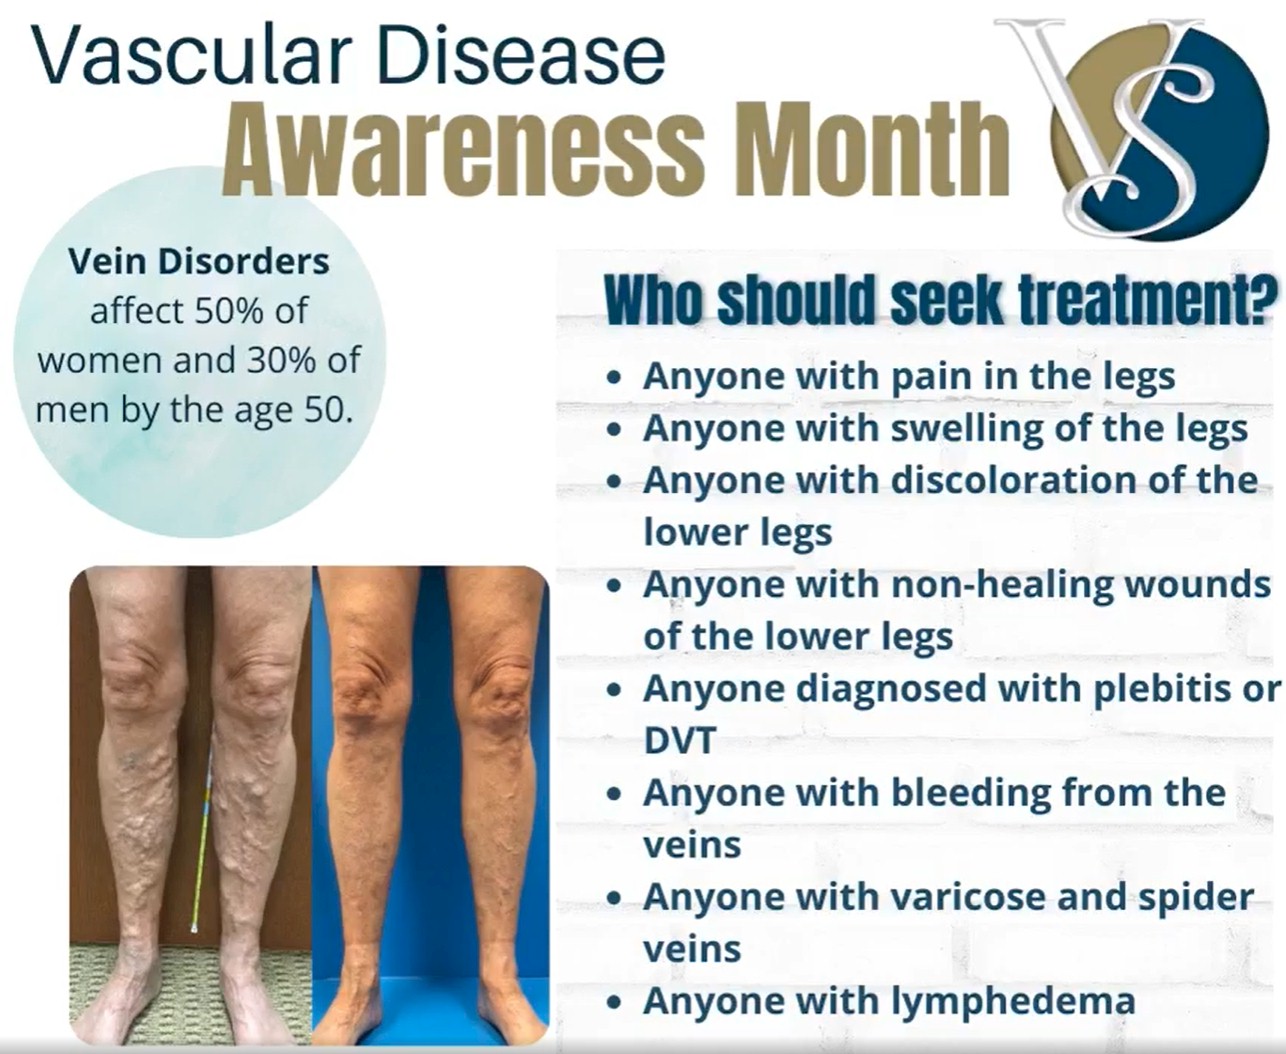 September is Vascular Disease Awareness Month